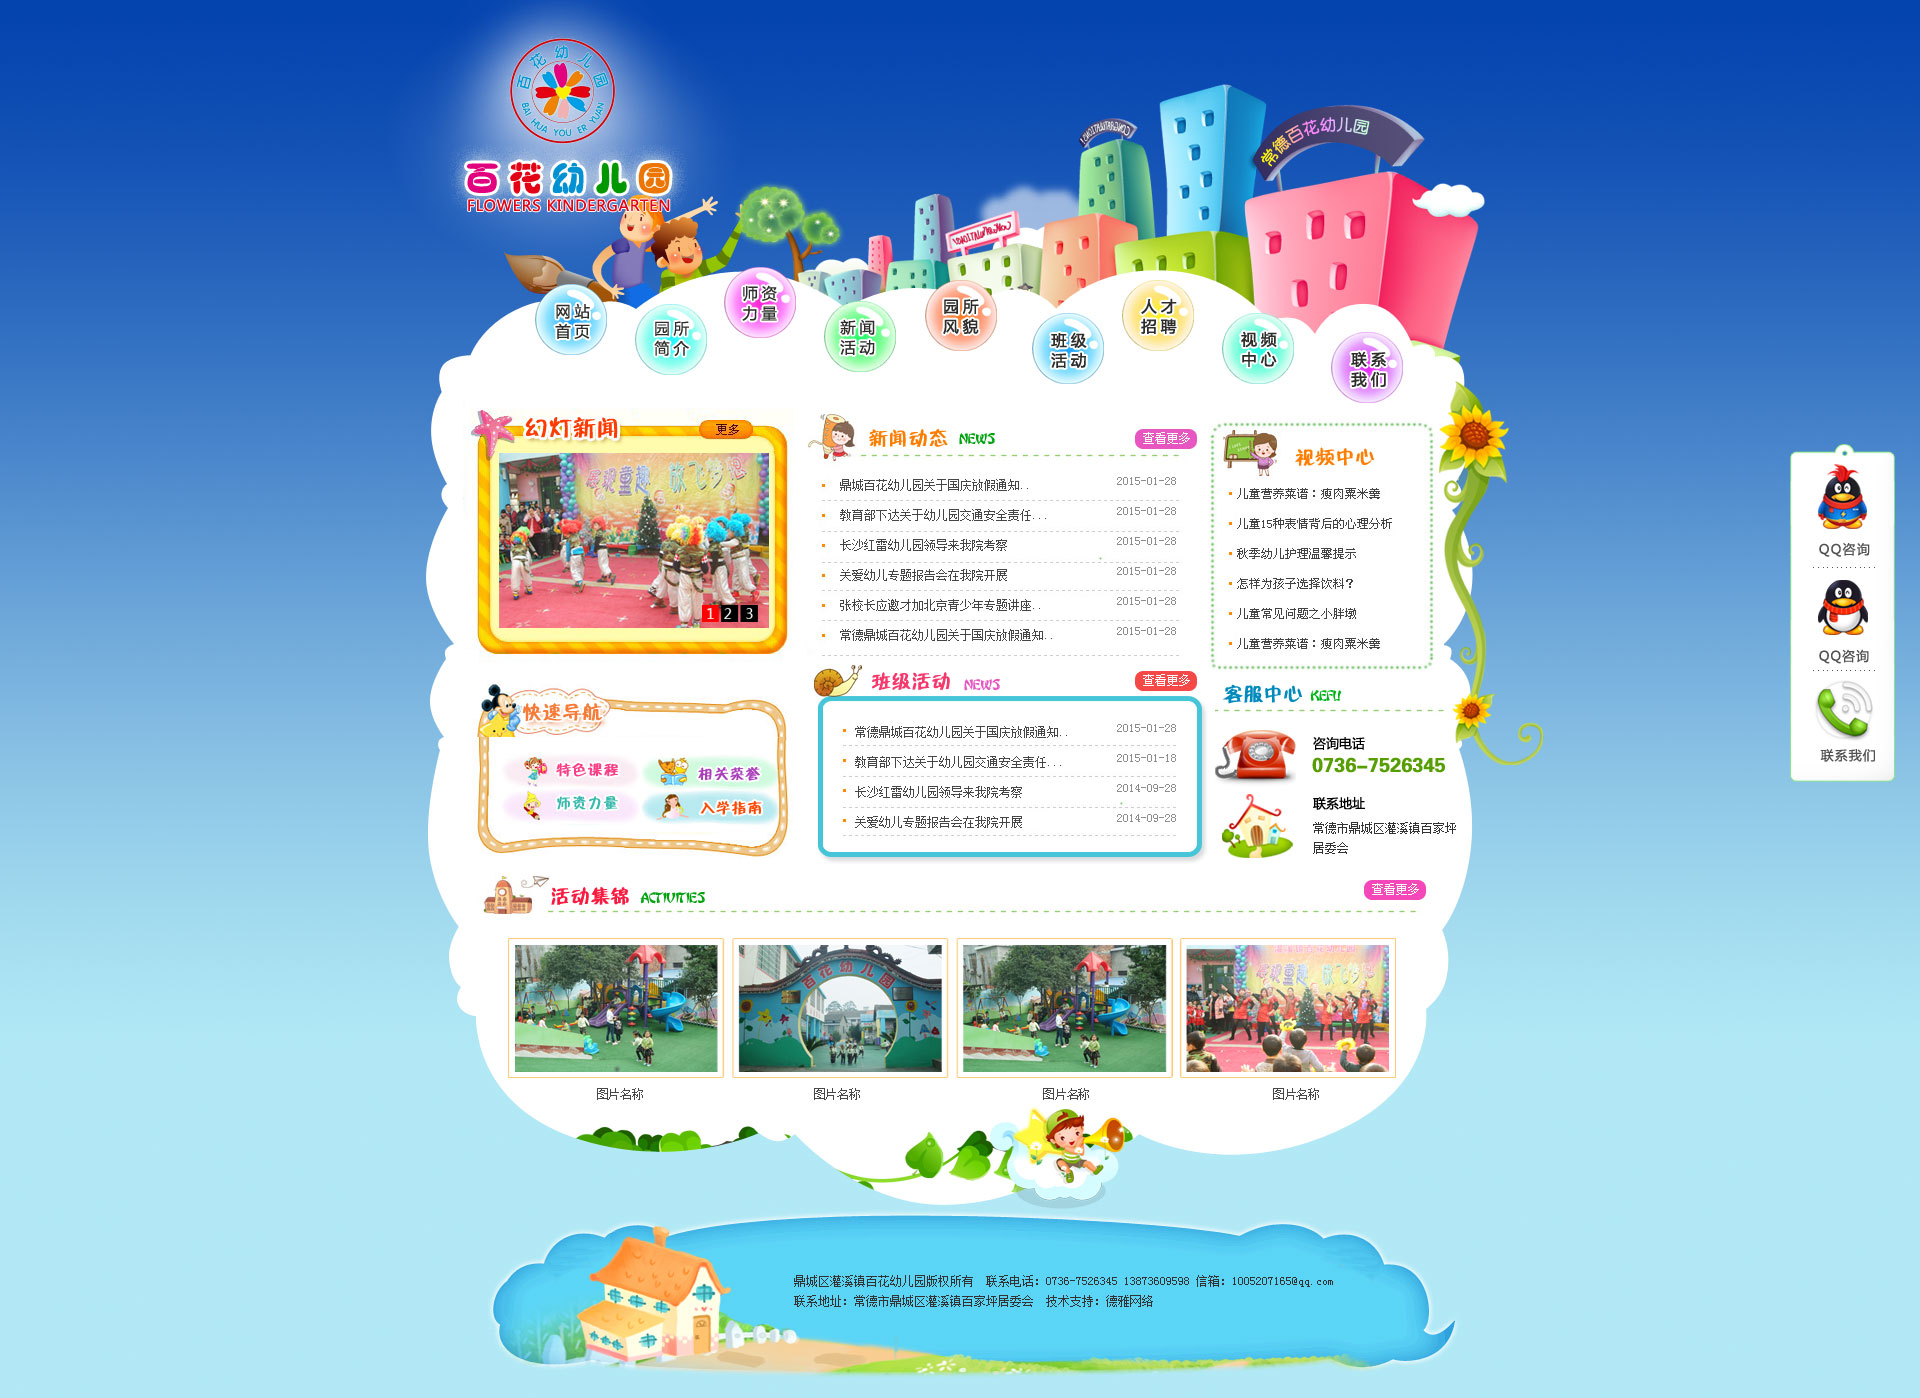 卡通风格的幼儿园网站设计psd模板下载